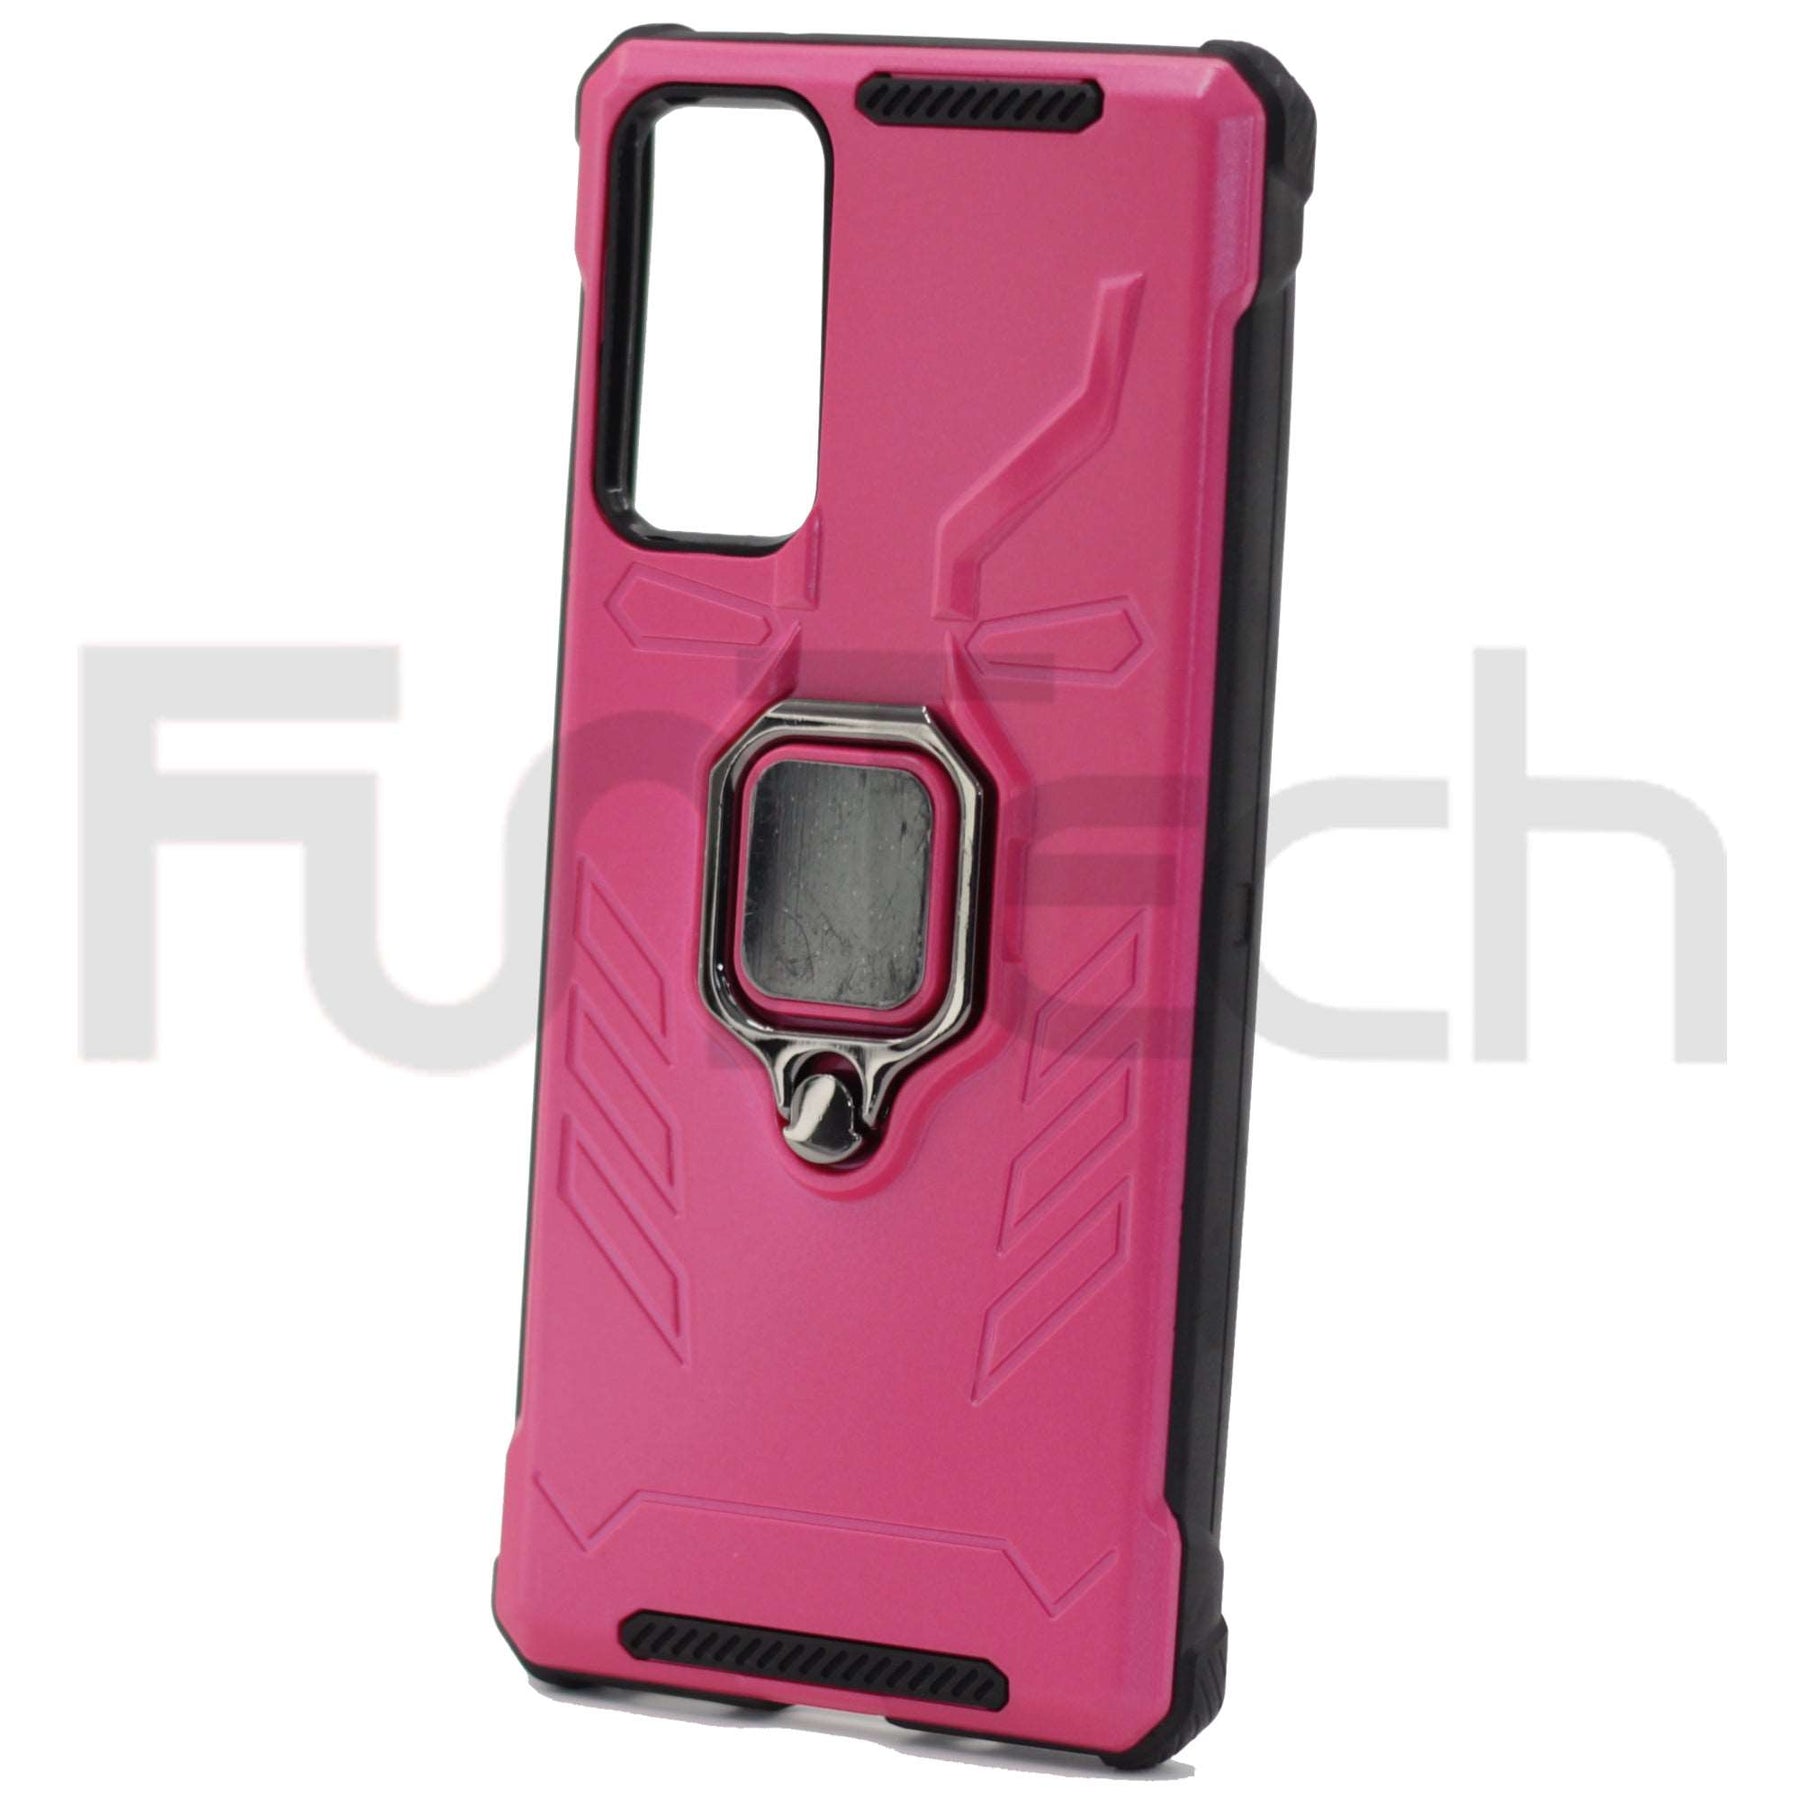 Samsung S20 FE Case, Color Pink